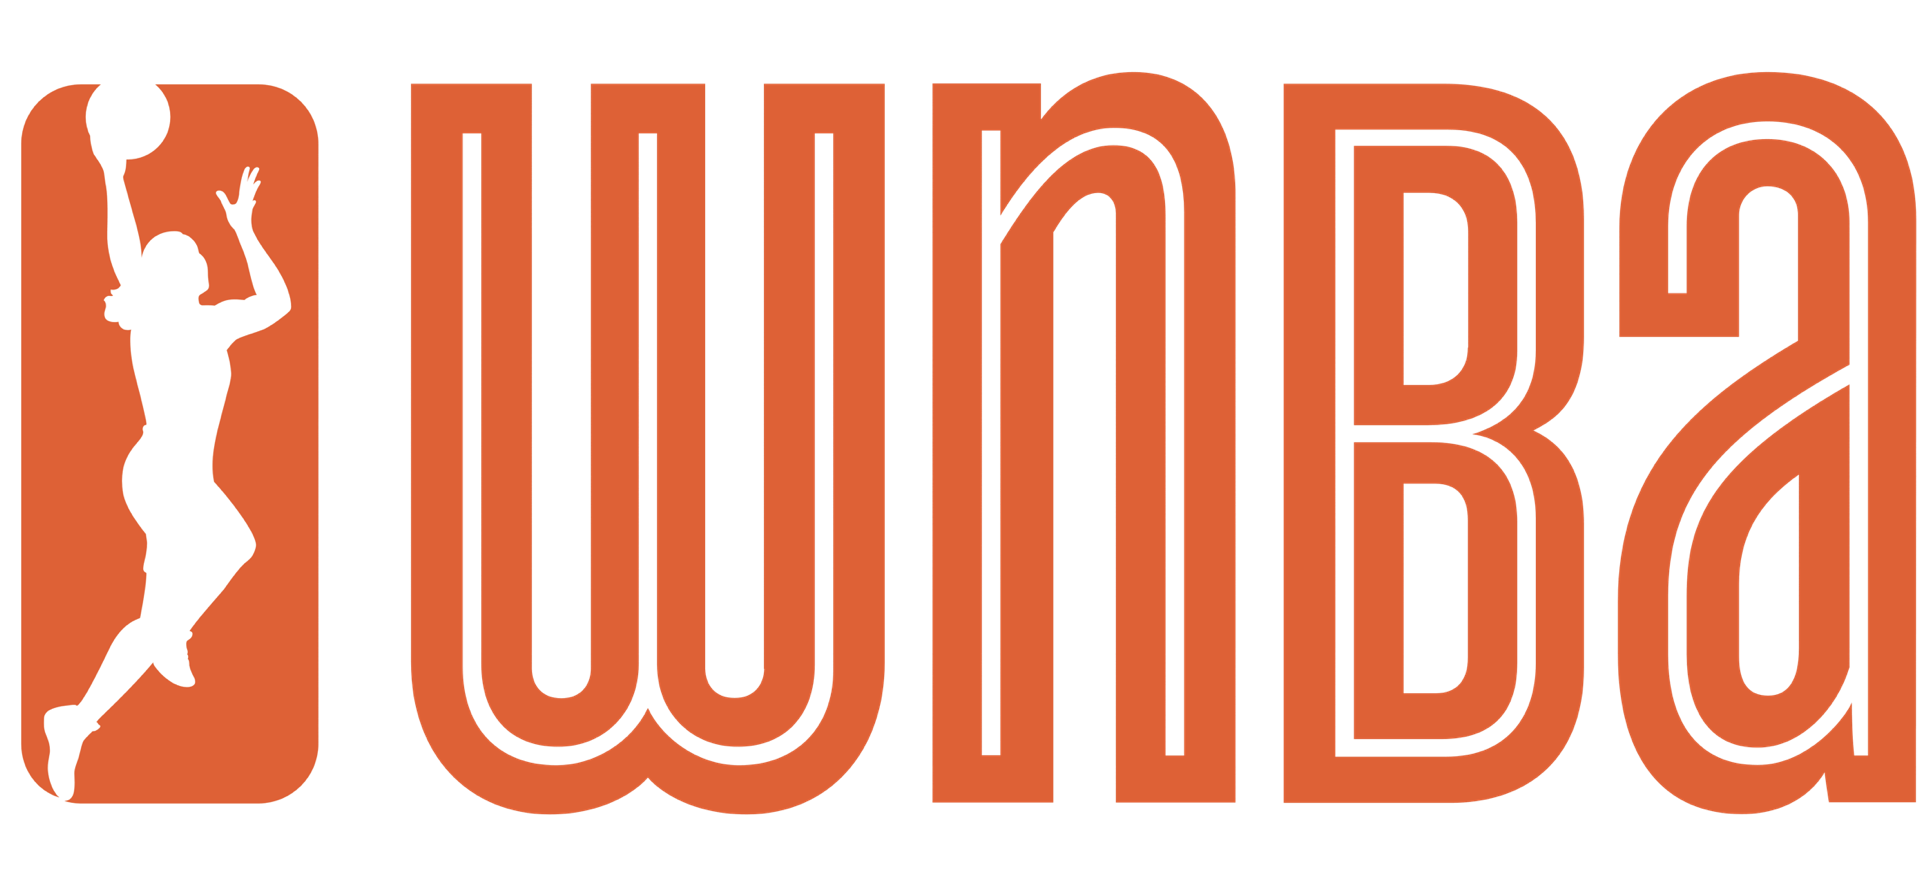 wnba-logo.png